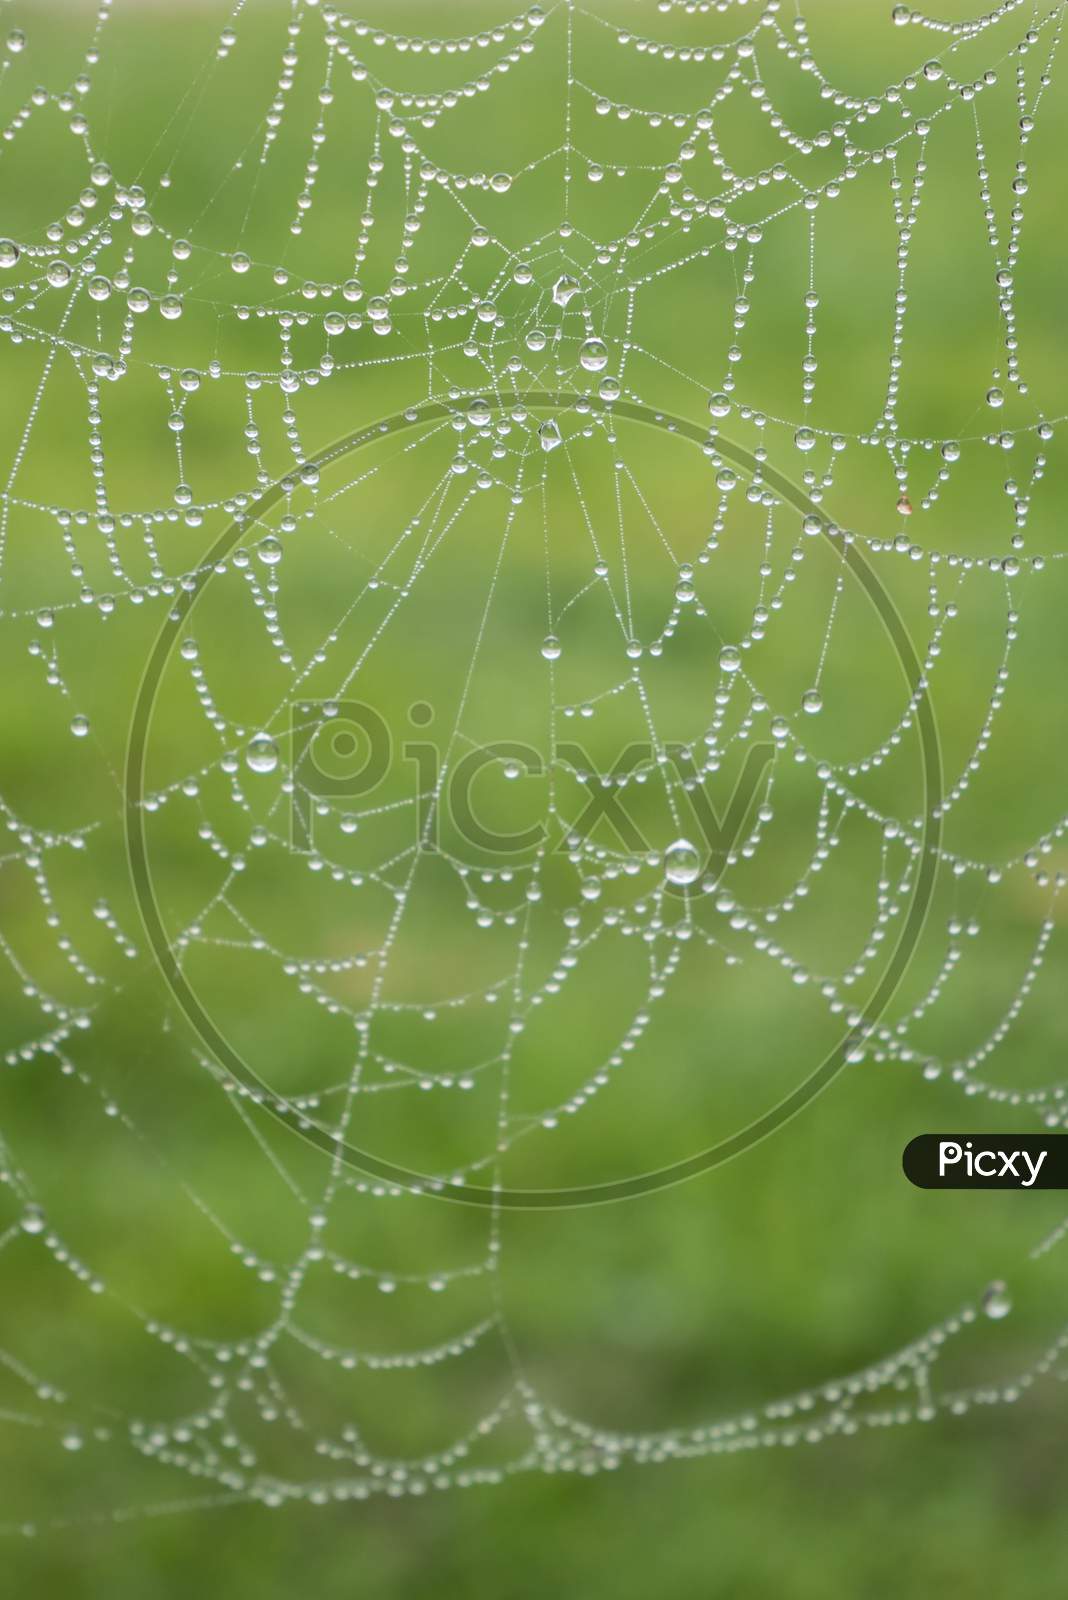 Rain Drops On The Spider Web